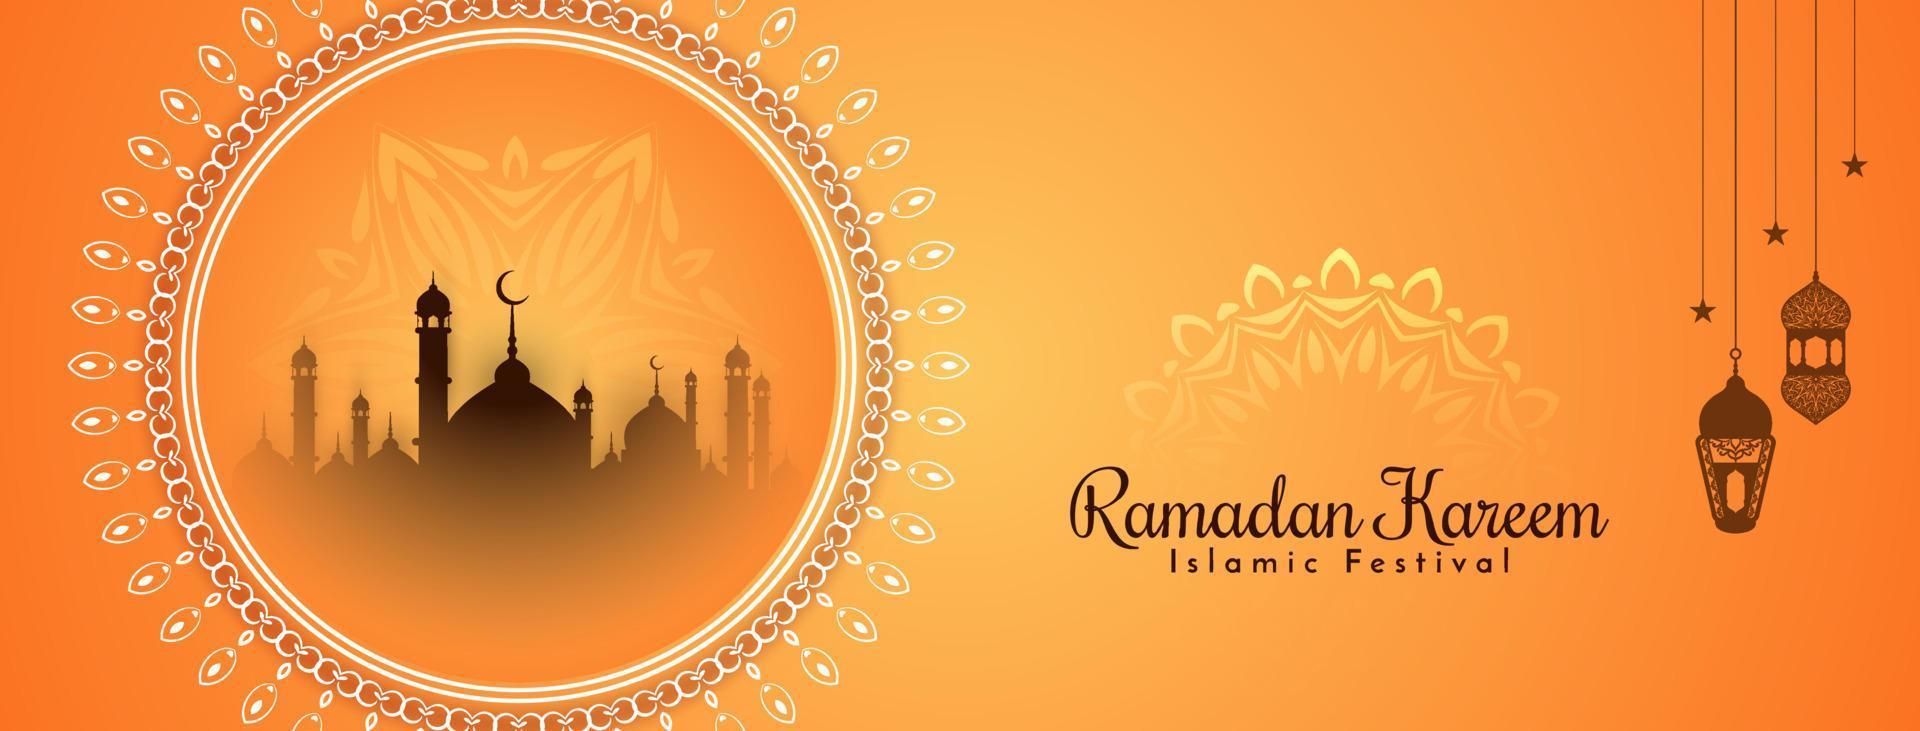 ramadan kareem islamitisch festival elegant decoratief bannerontwerp vector